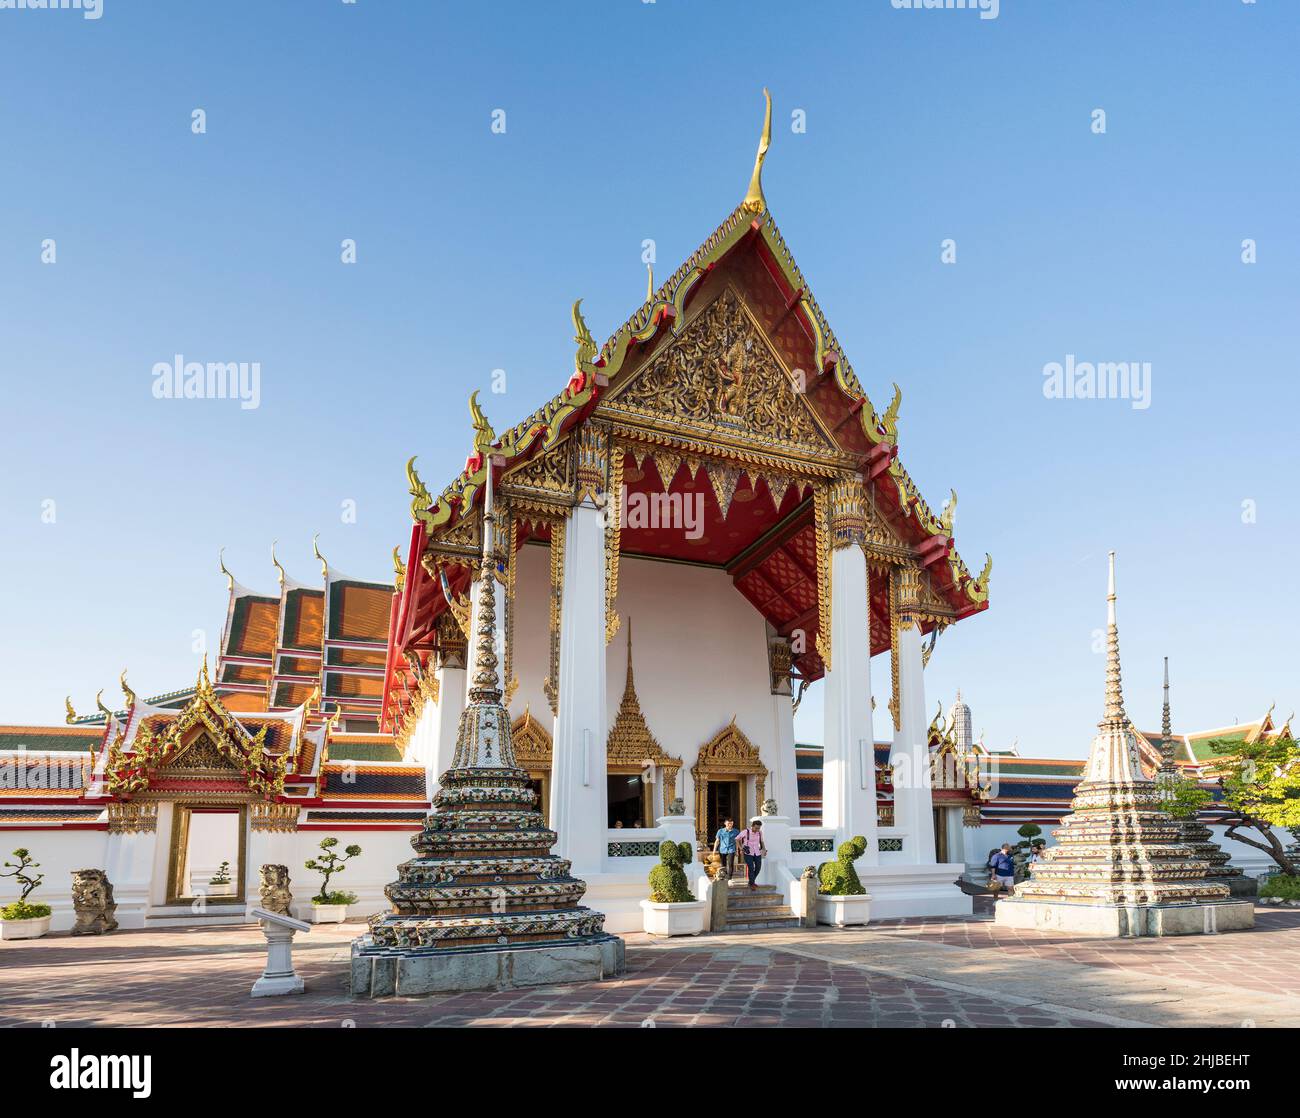 Touristes quittant un bâtiment au temple Wat Pho, le Bouddha couché, Bangkok, Thaïlande Banque D'Images